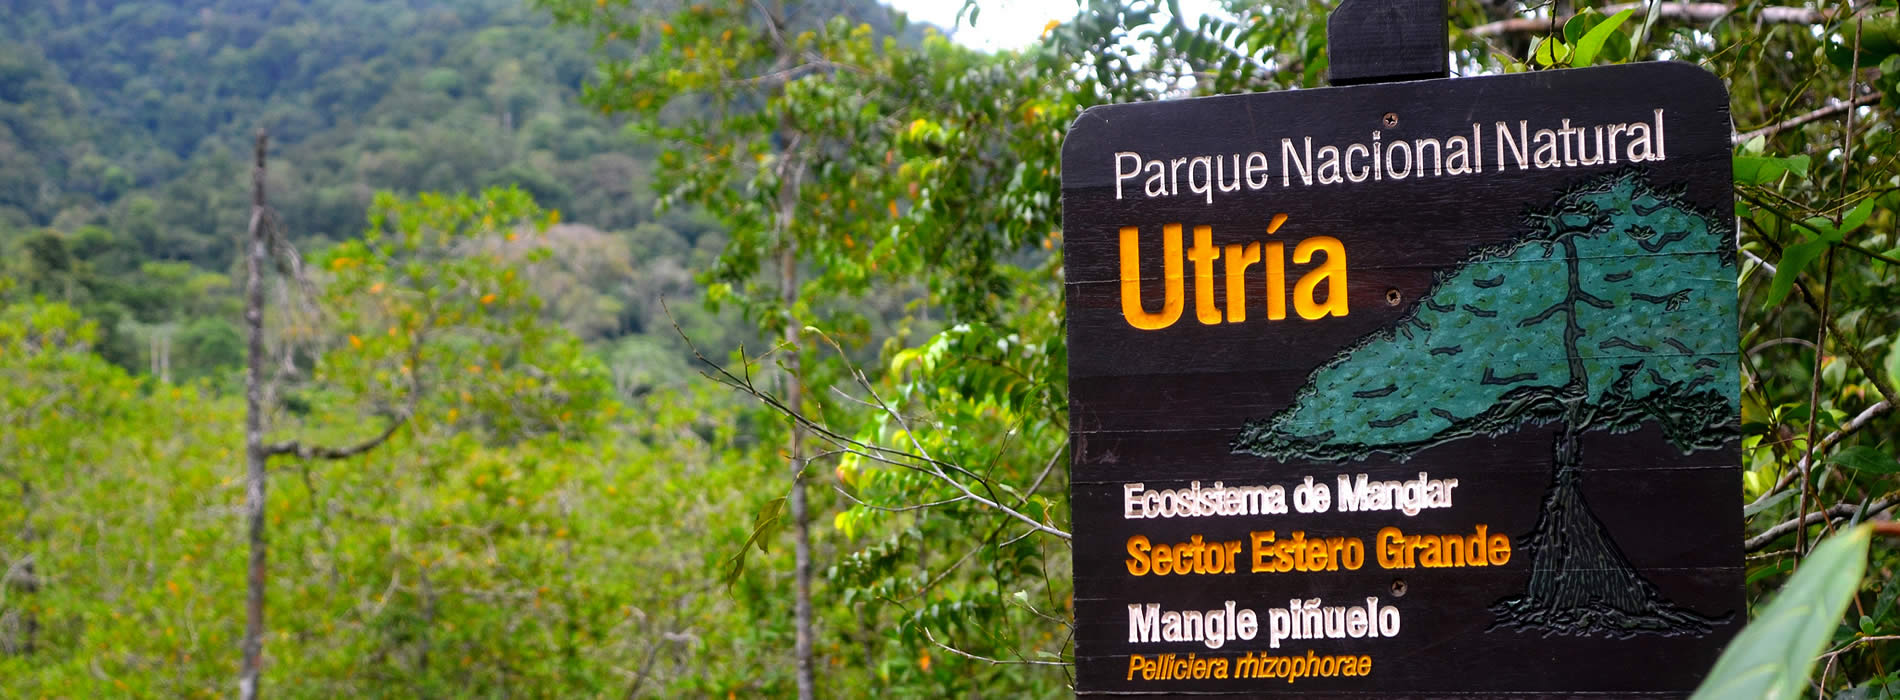 Parque Nacional de Nutria, Chocó